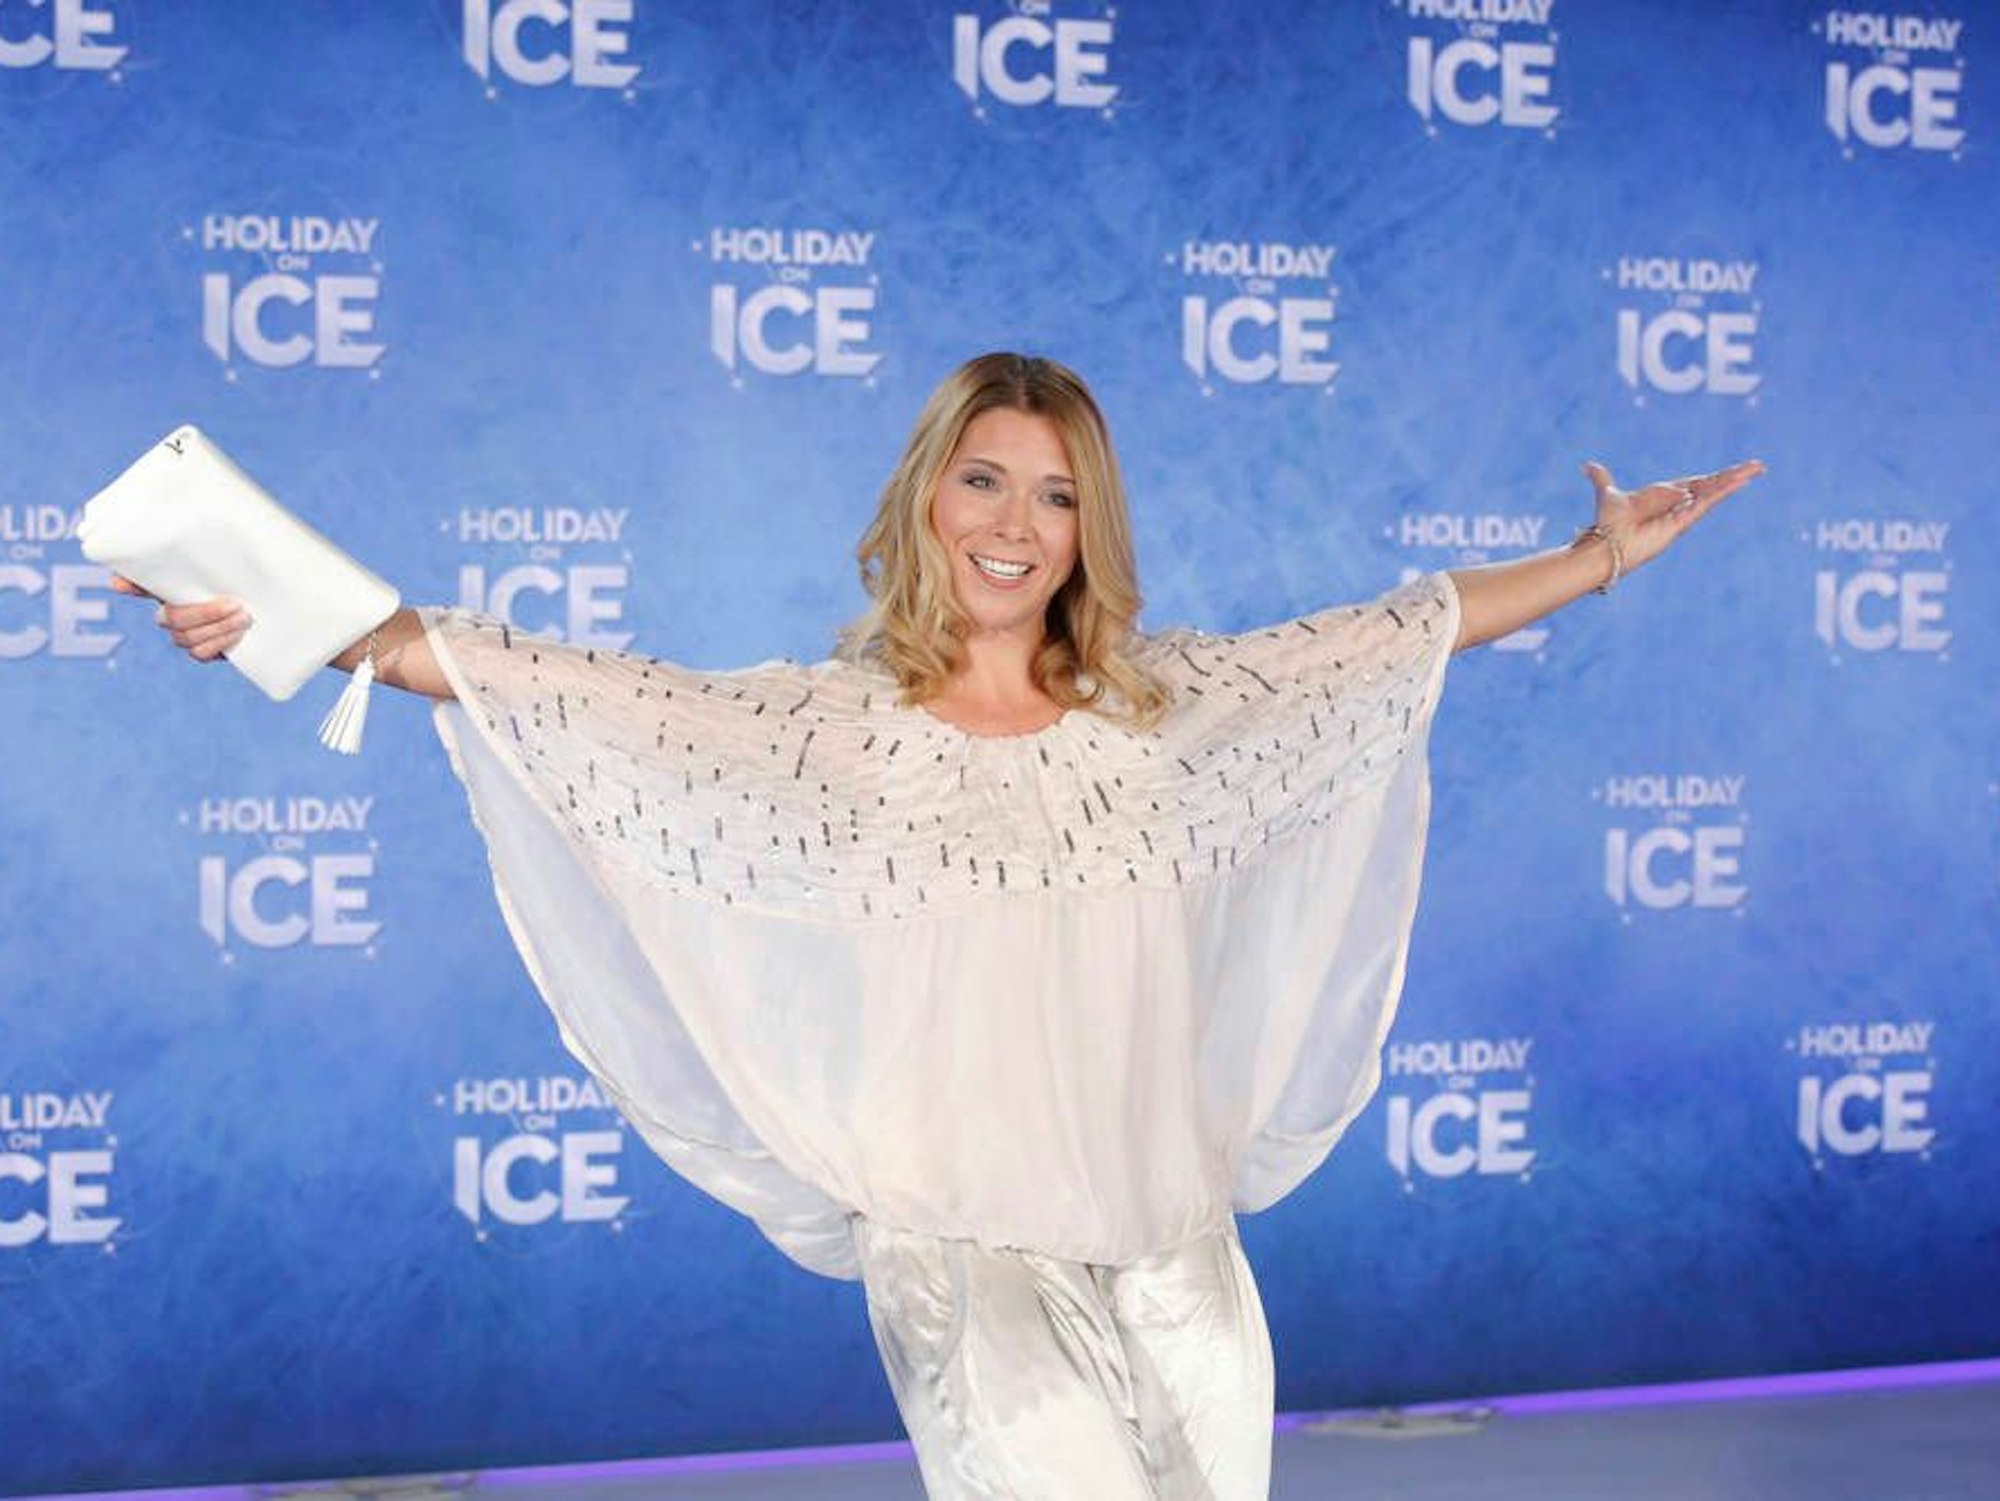 Tanja Szewczenko posiert vor einer Werbewand von „Holidays on Ice“ im weißen Outfit.